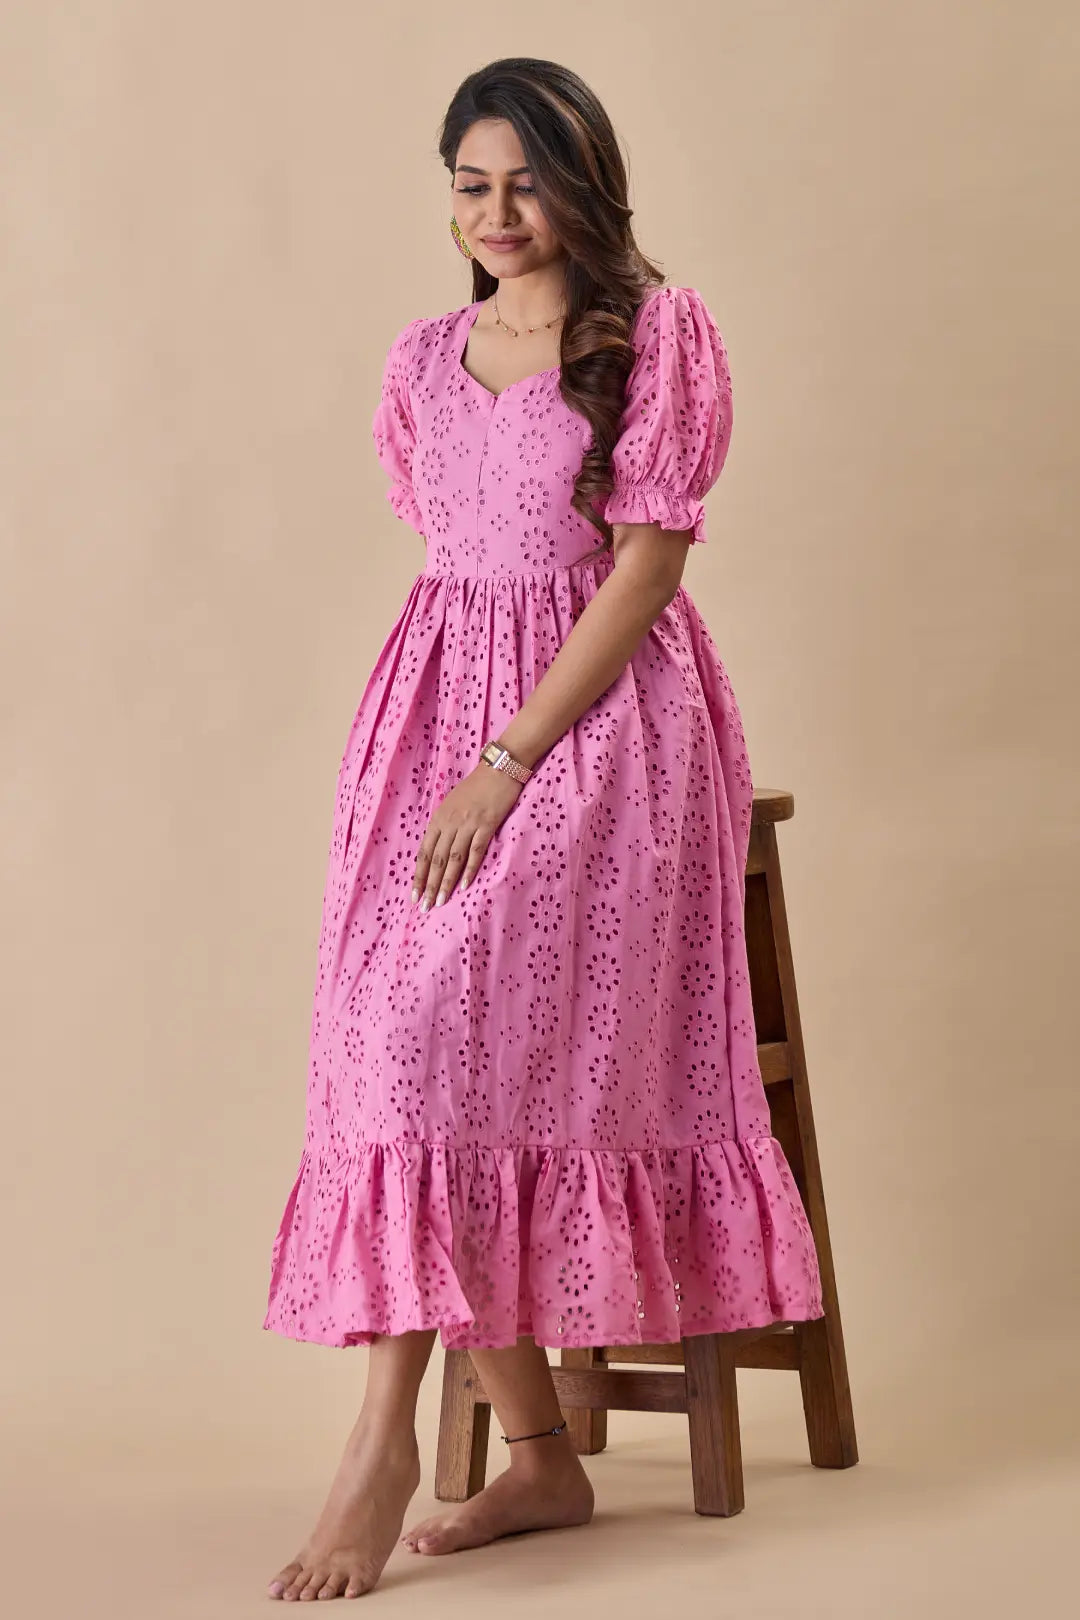 Rosy Pink Hakoba Maternity Dress